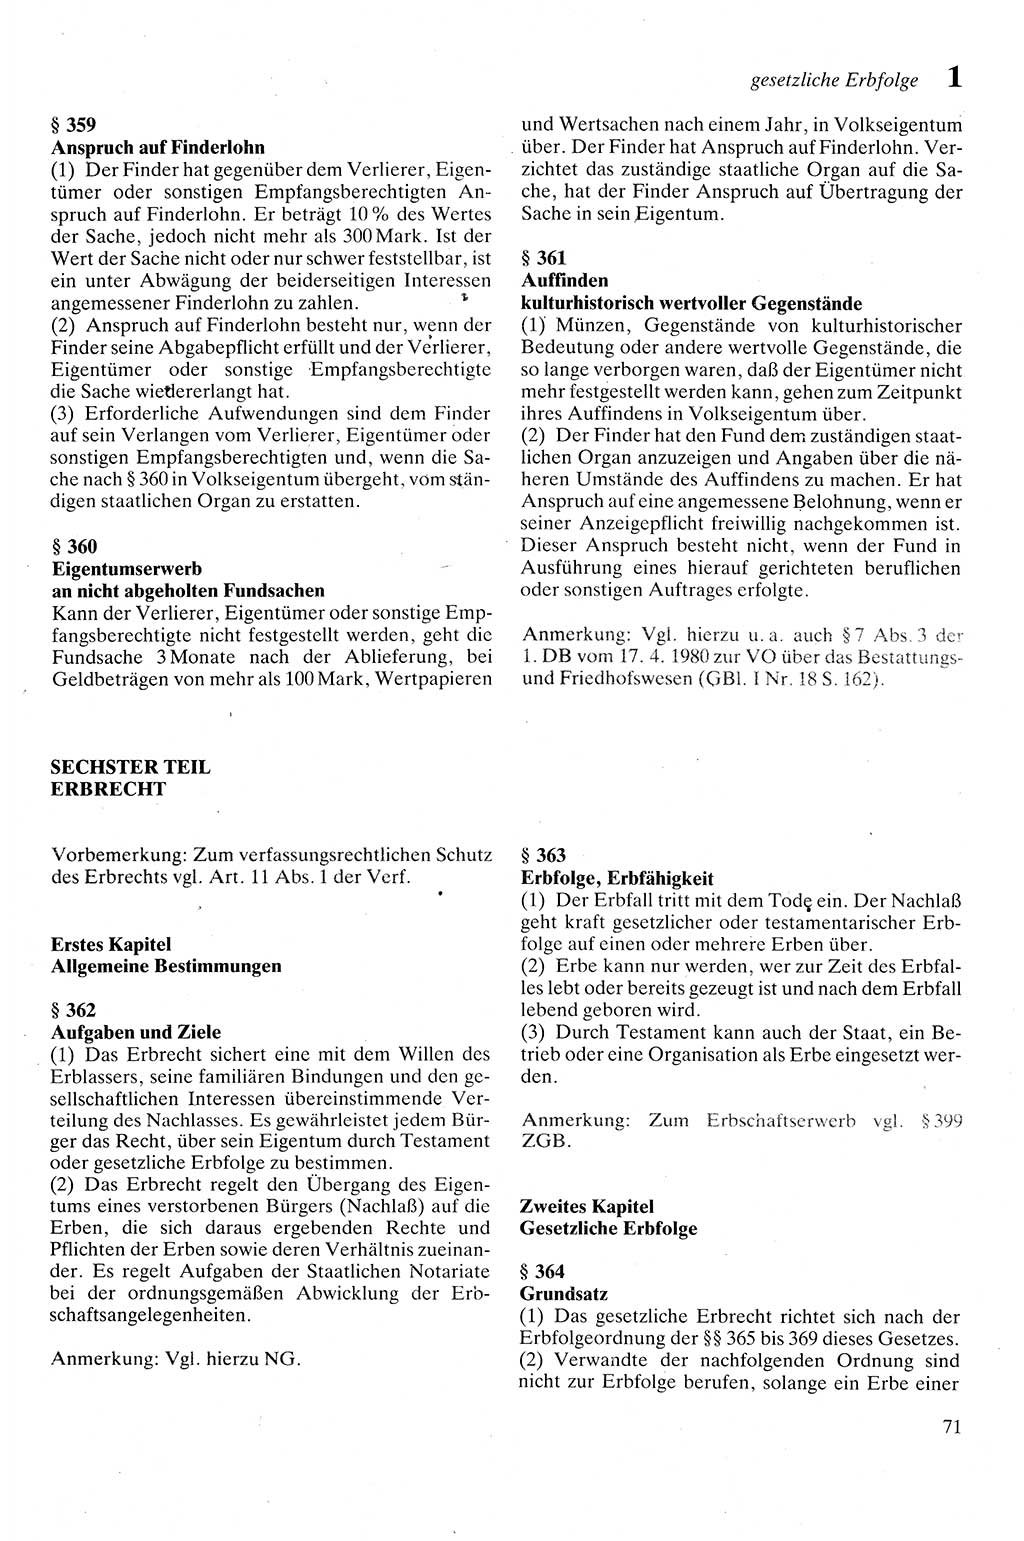 Zivilgesetzbuch (ZVG) sowie angrenzende Gesetze und Bestimmungen [Deutsche Demokratische Republik (DDR)] 1975, Seite 71 (ZGB Ges. Best. DDR 1975, S. 71)